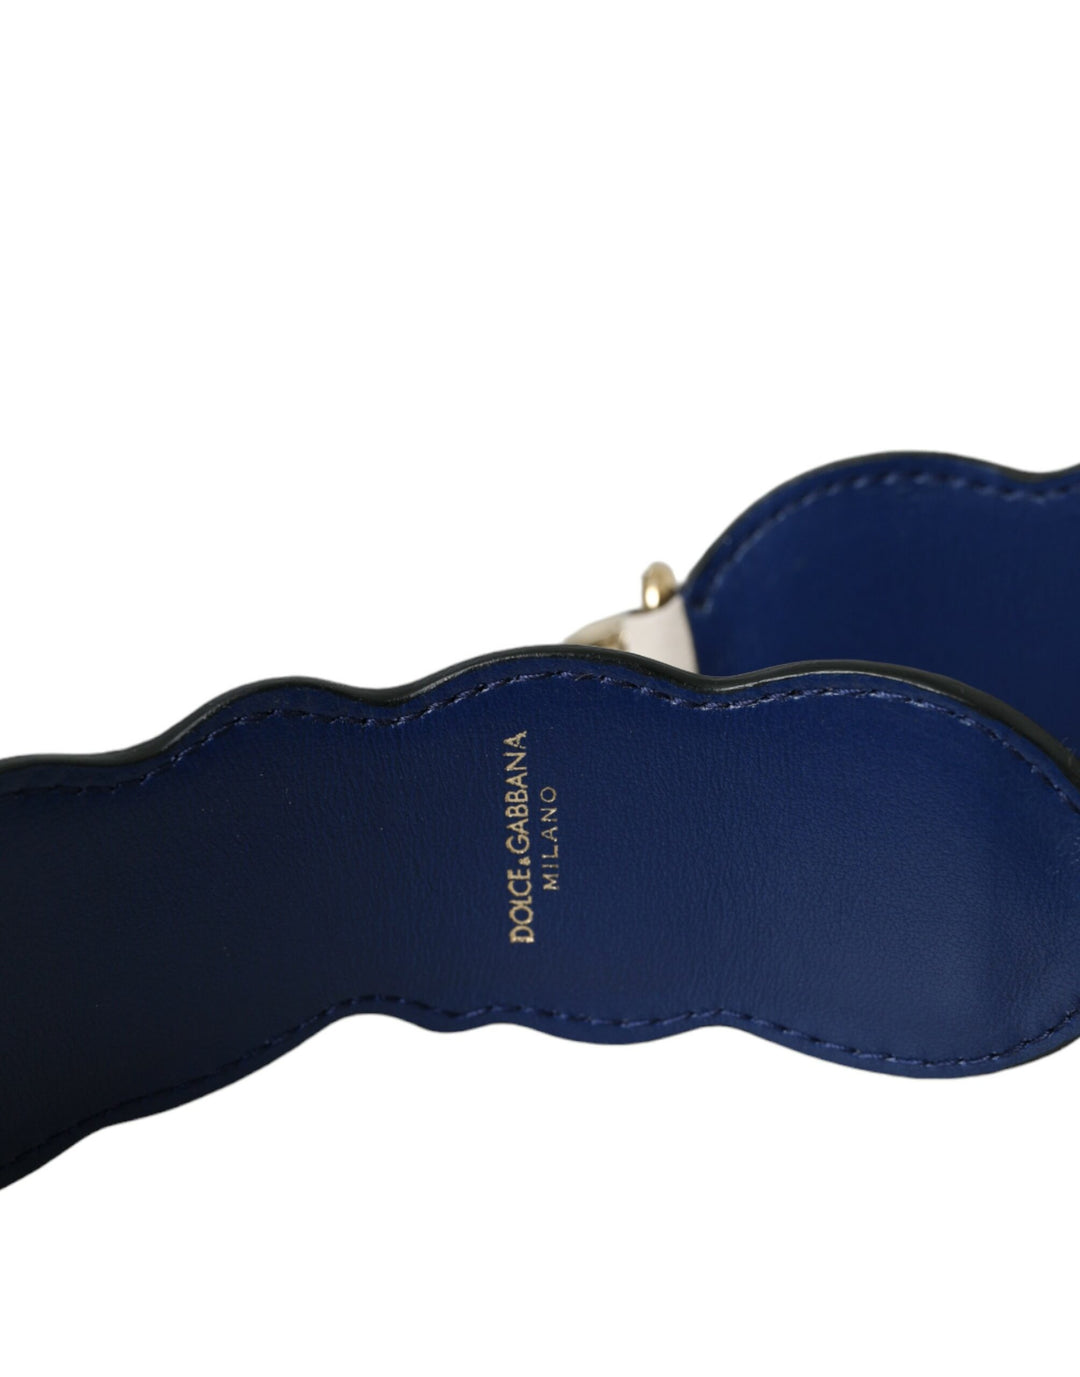 Dolce & Gabbana White Leather Handbag Belt Accessory Shoulder Strap